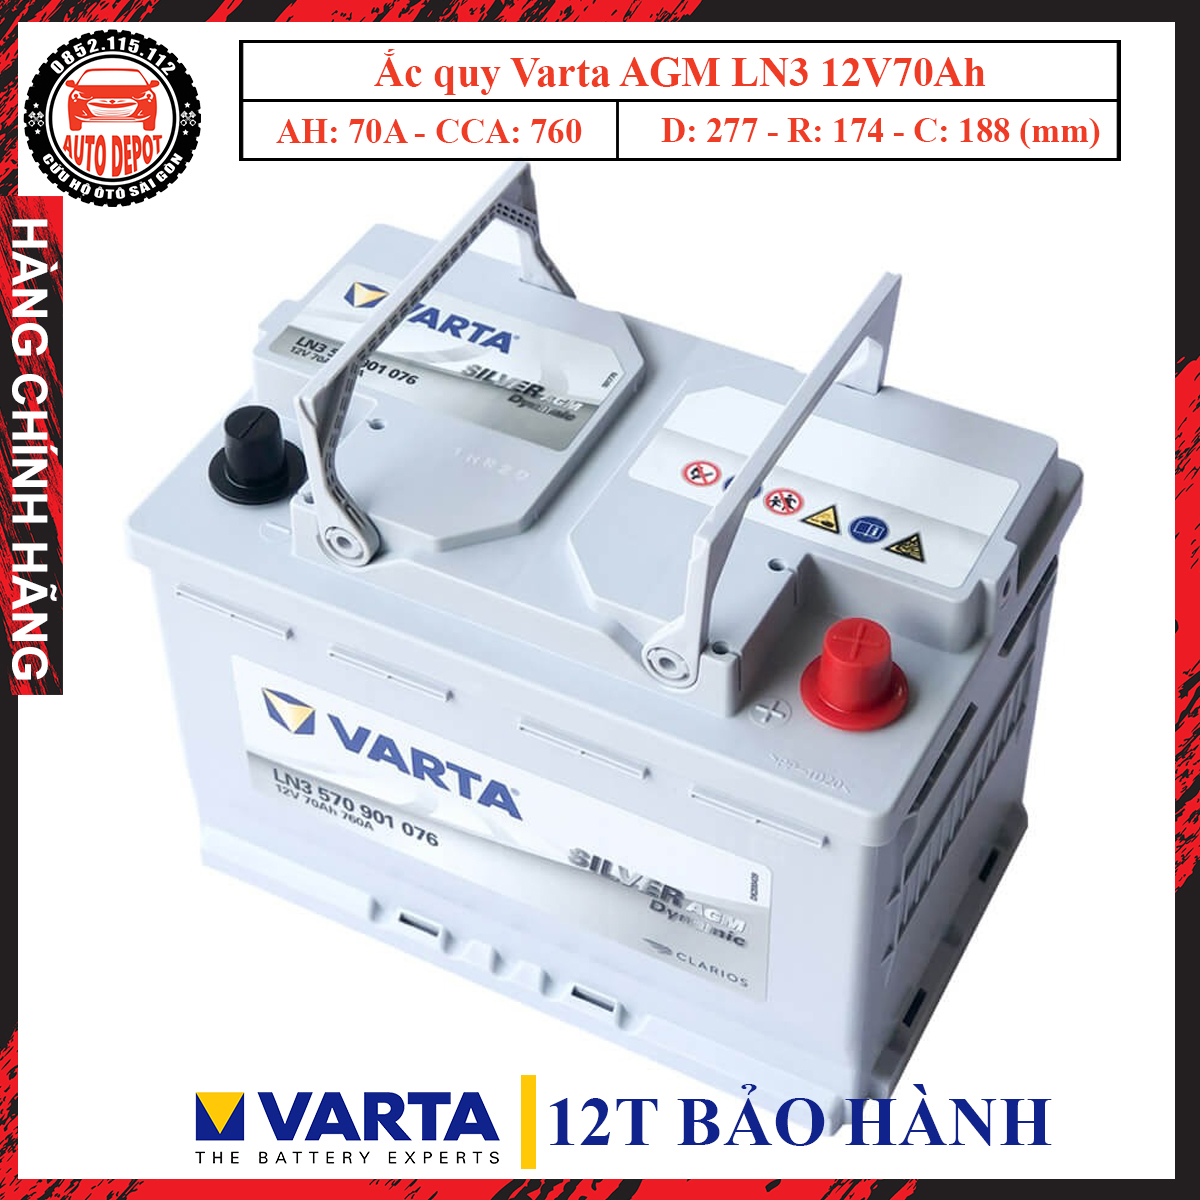 Ắc quy Varta Silver Dynamic AGM LN3 70Ah chính hãng giá rẻ